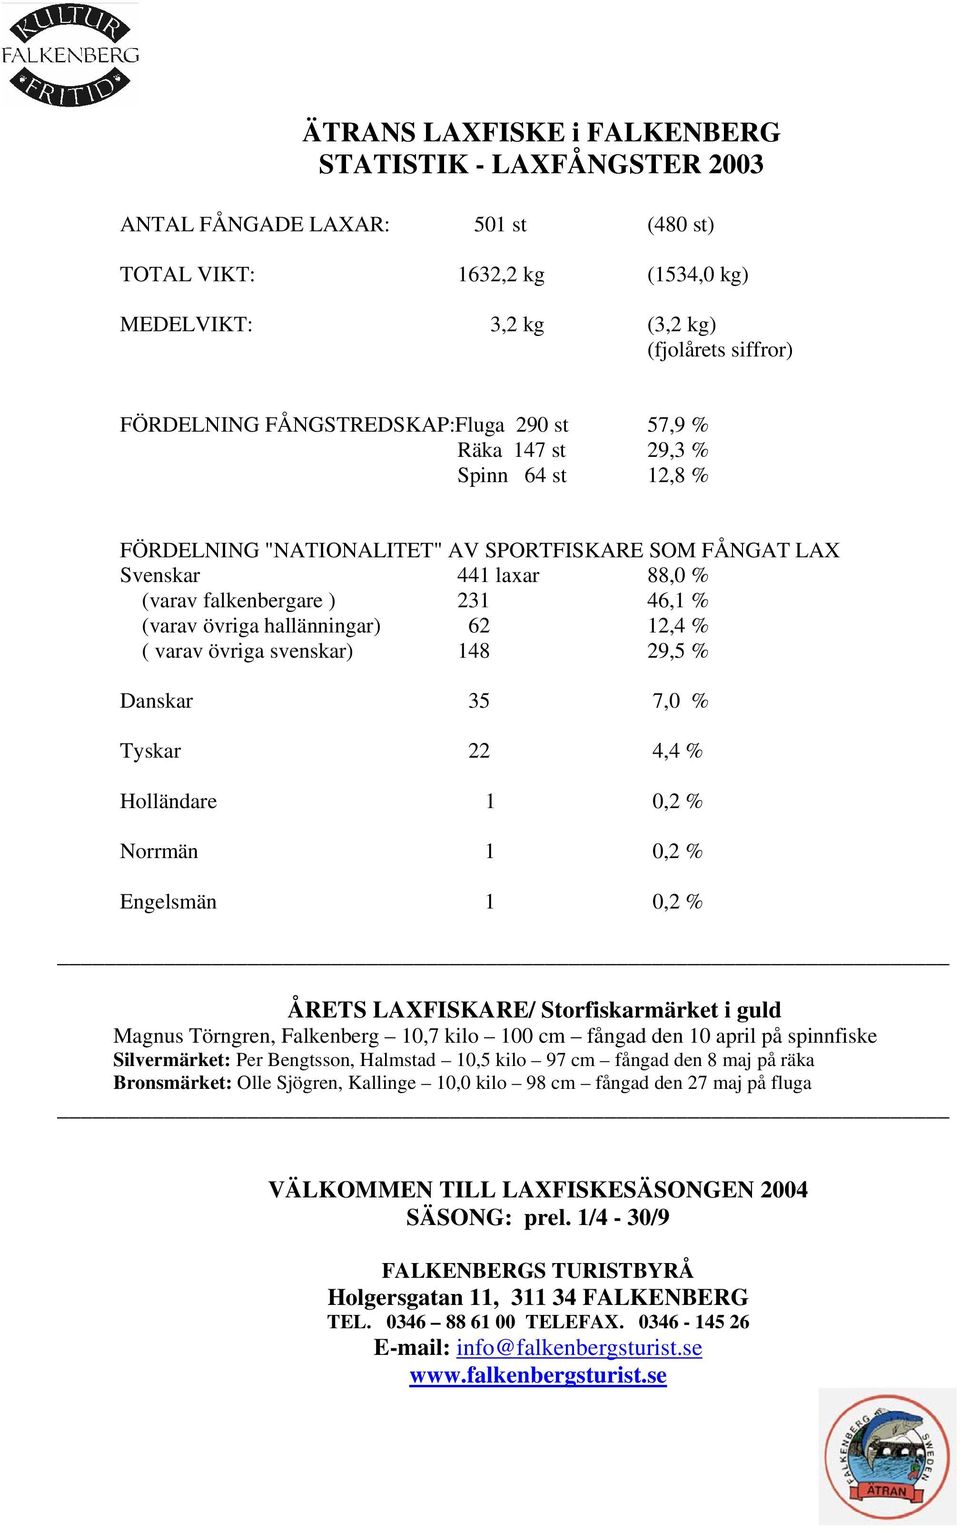 övriga hallänningar) 62 12,4 % ( varav övriga svenskar) 148 29,5 % Danskar 35 7,0 % Tyskar 22 4,4 % Holländare 1 0,2 % Norrmän 1 0,2 % Engelsmän 1 0,2 % ÅRETS LAXFISKARE/ Storfiskarmärket i guld